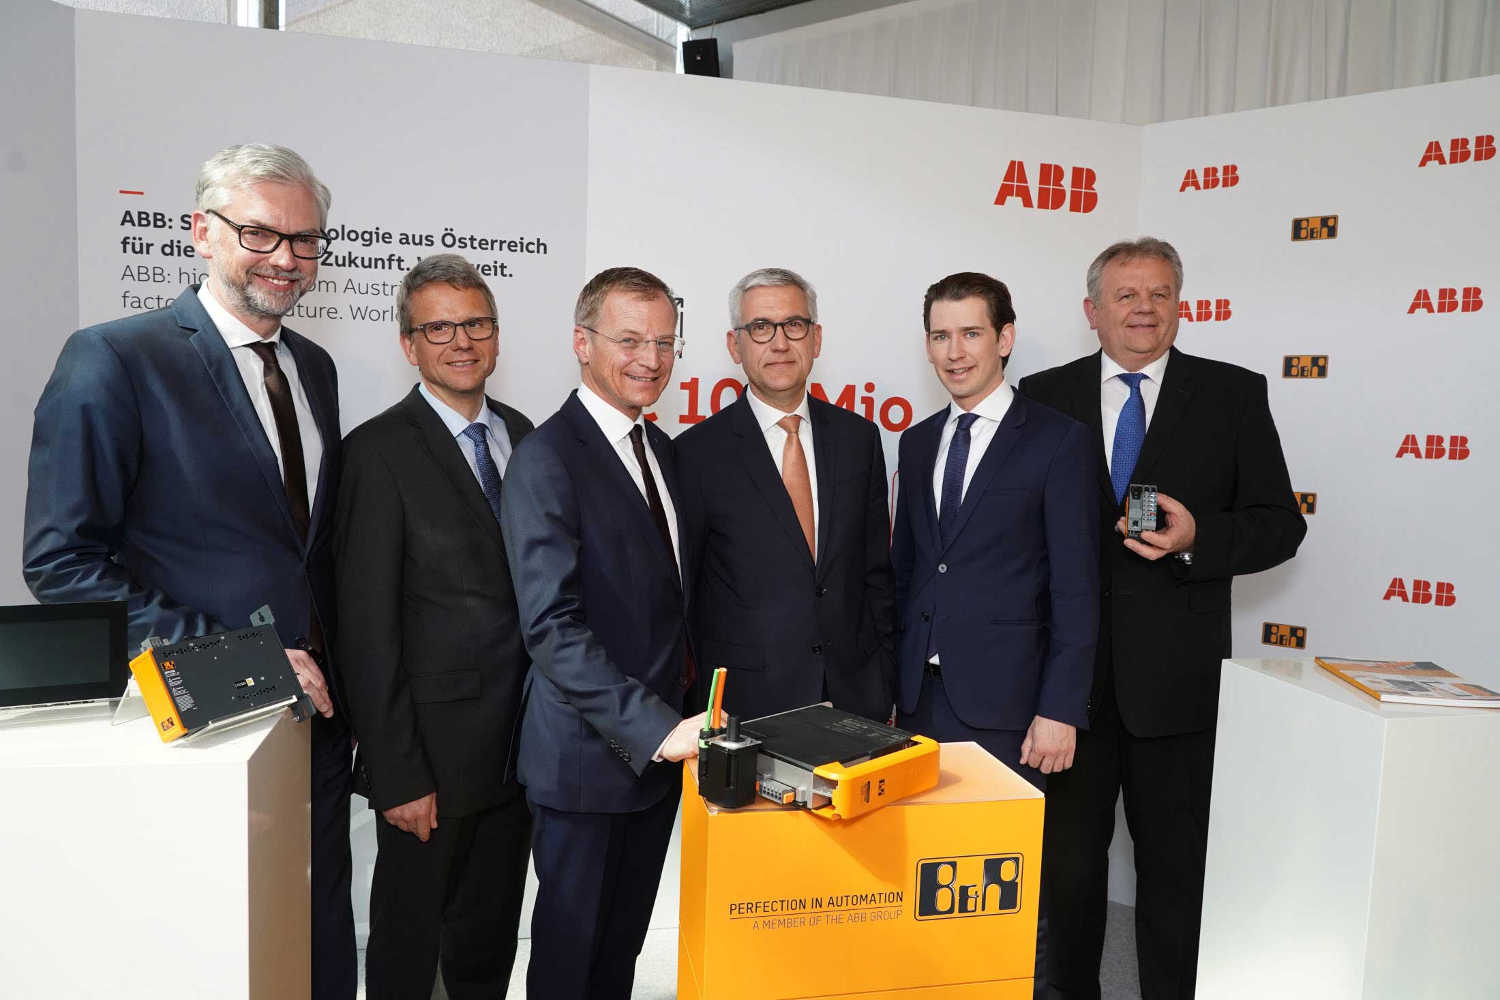 100 Millionen investiert ABB in den Standort Eggelsberg. Bei der Präsentation (v.l.n.r.): Michael Strugl (LH Stv.), Peter Terwiesch (ABB), Thomas Stelzer (LH OÖ), Ulrich Spiesshofer (ABB), Sebastian Kurz, Hans Wimmer (GF B&R)